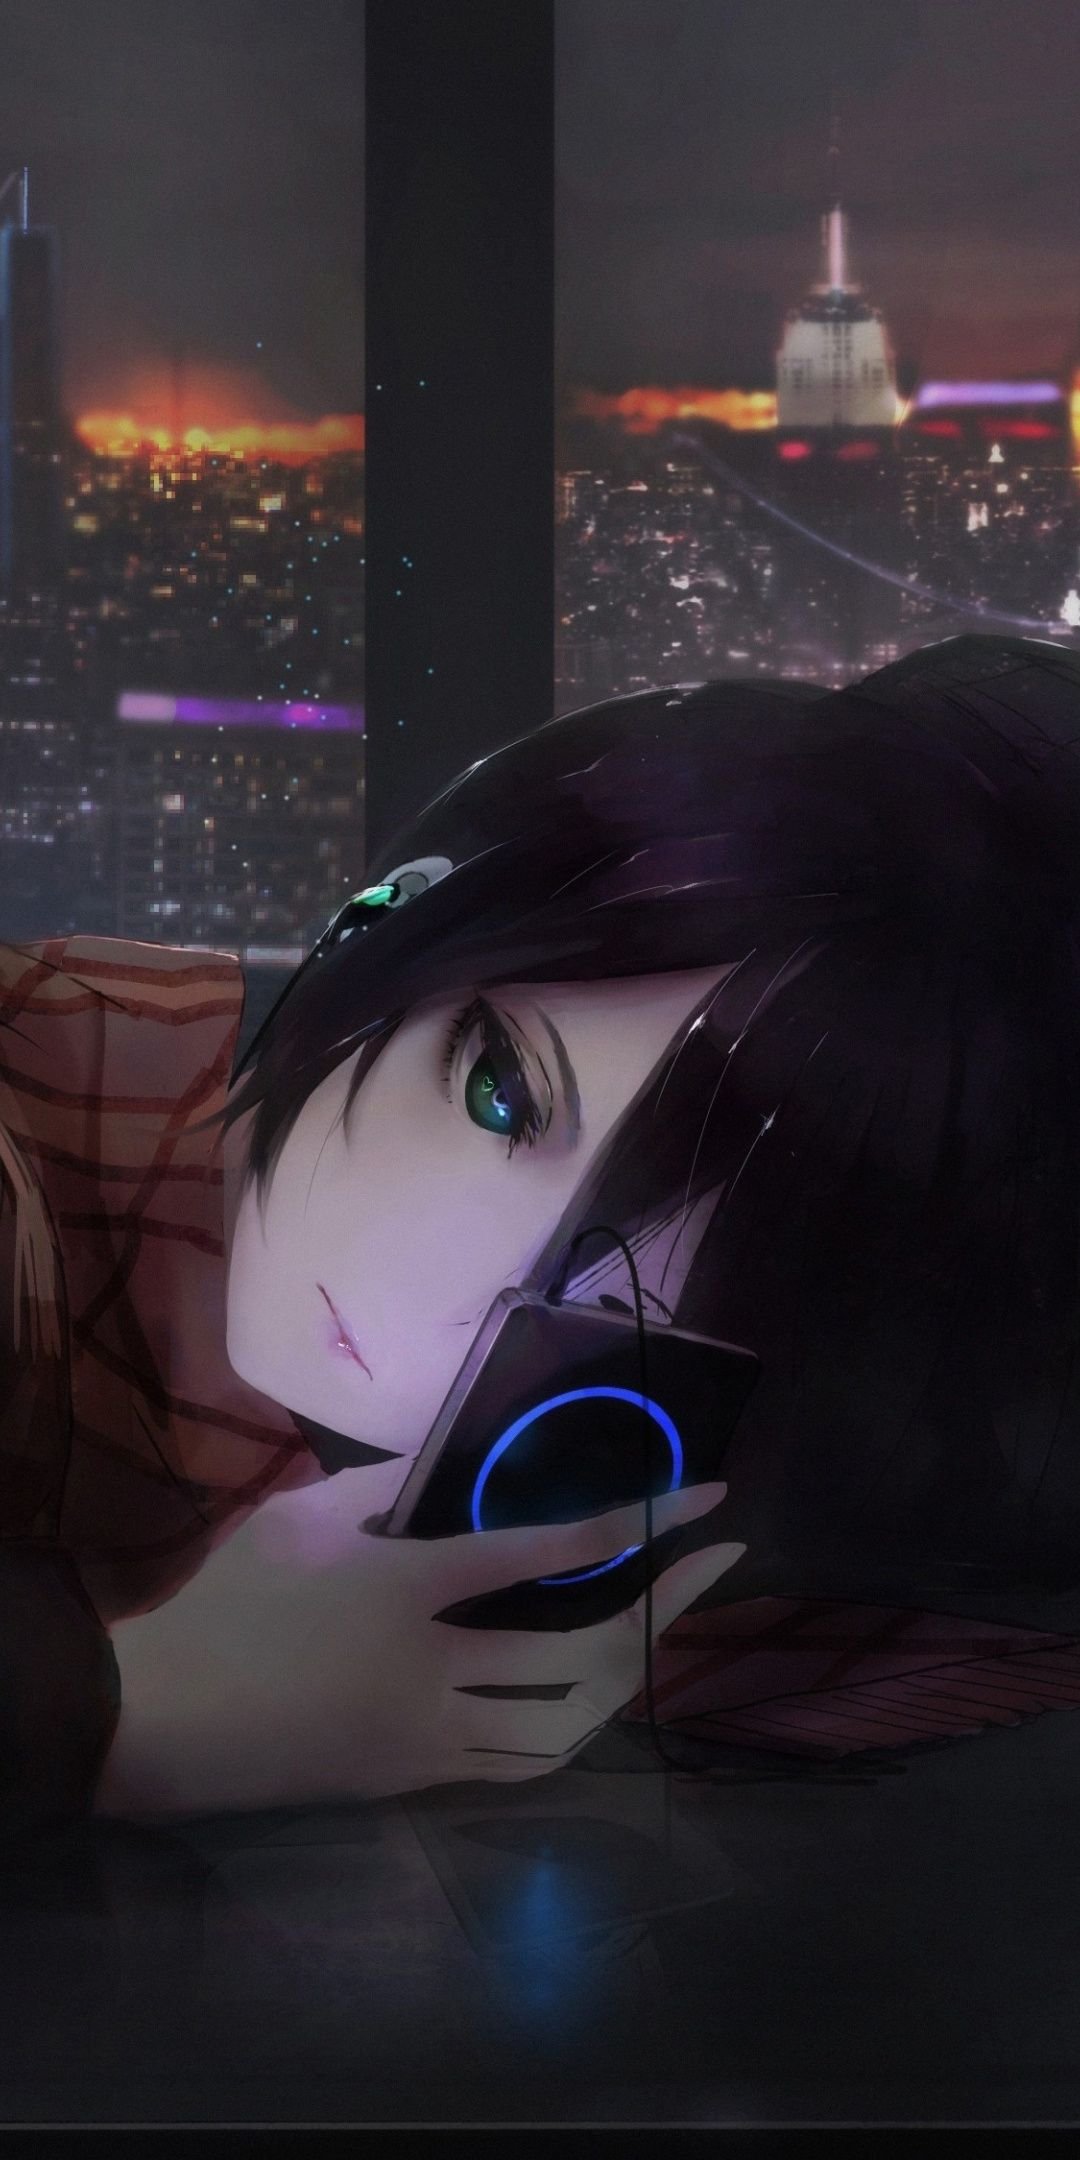 Sad anime girl on ledge Wallpapers Download